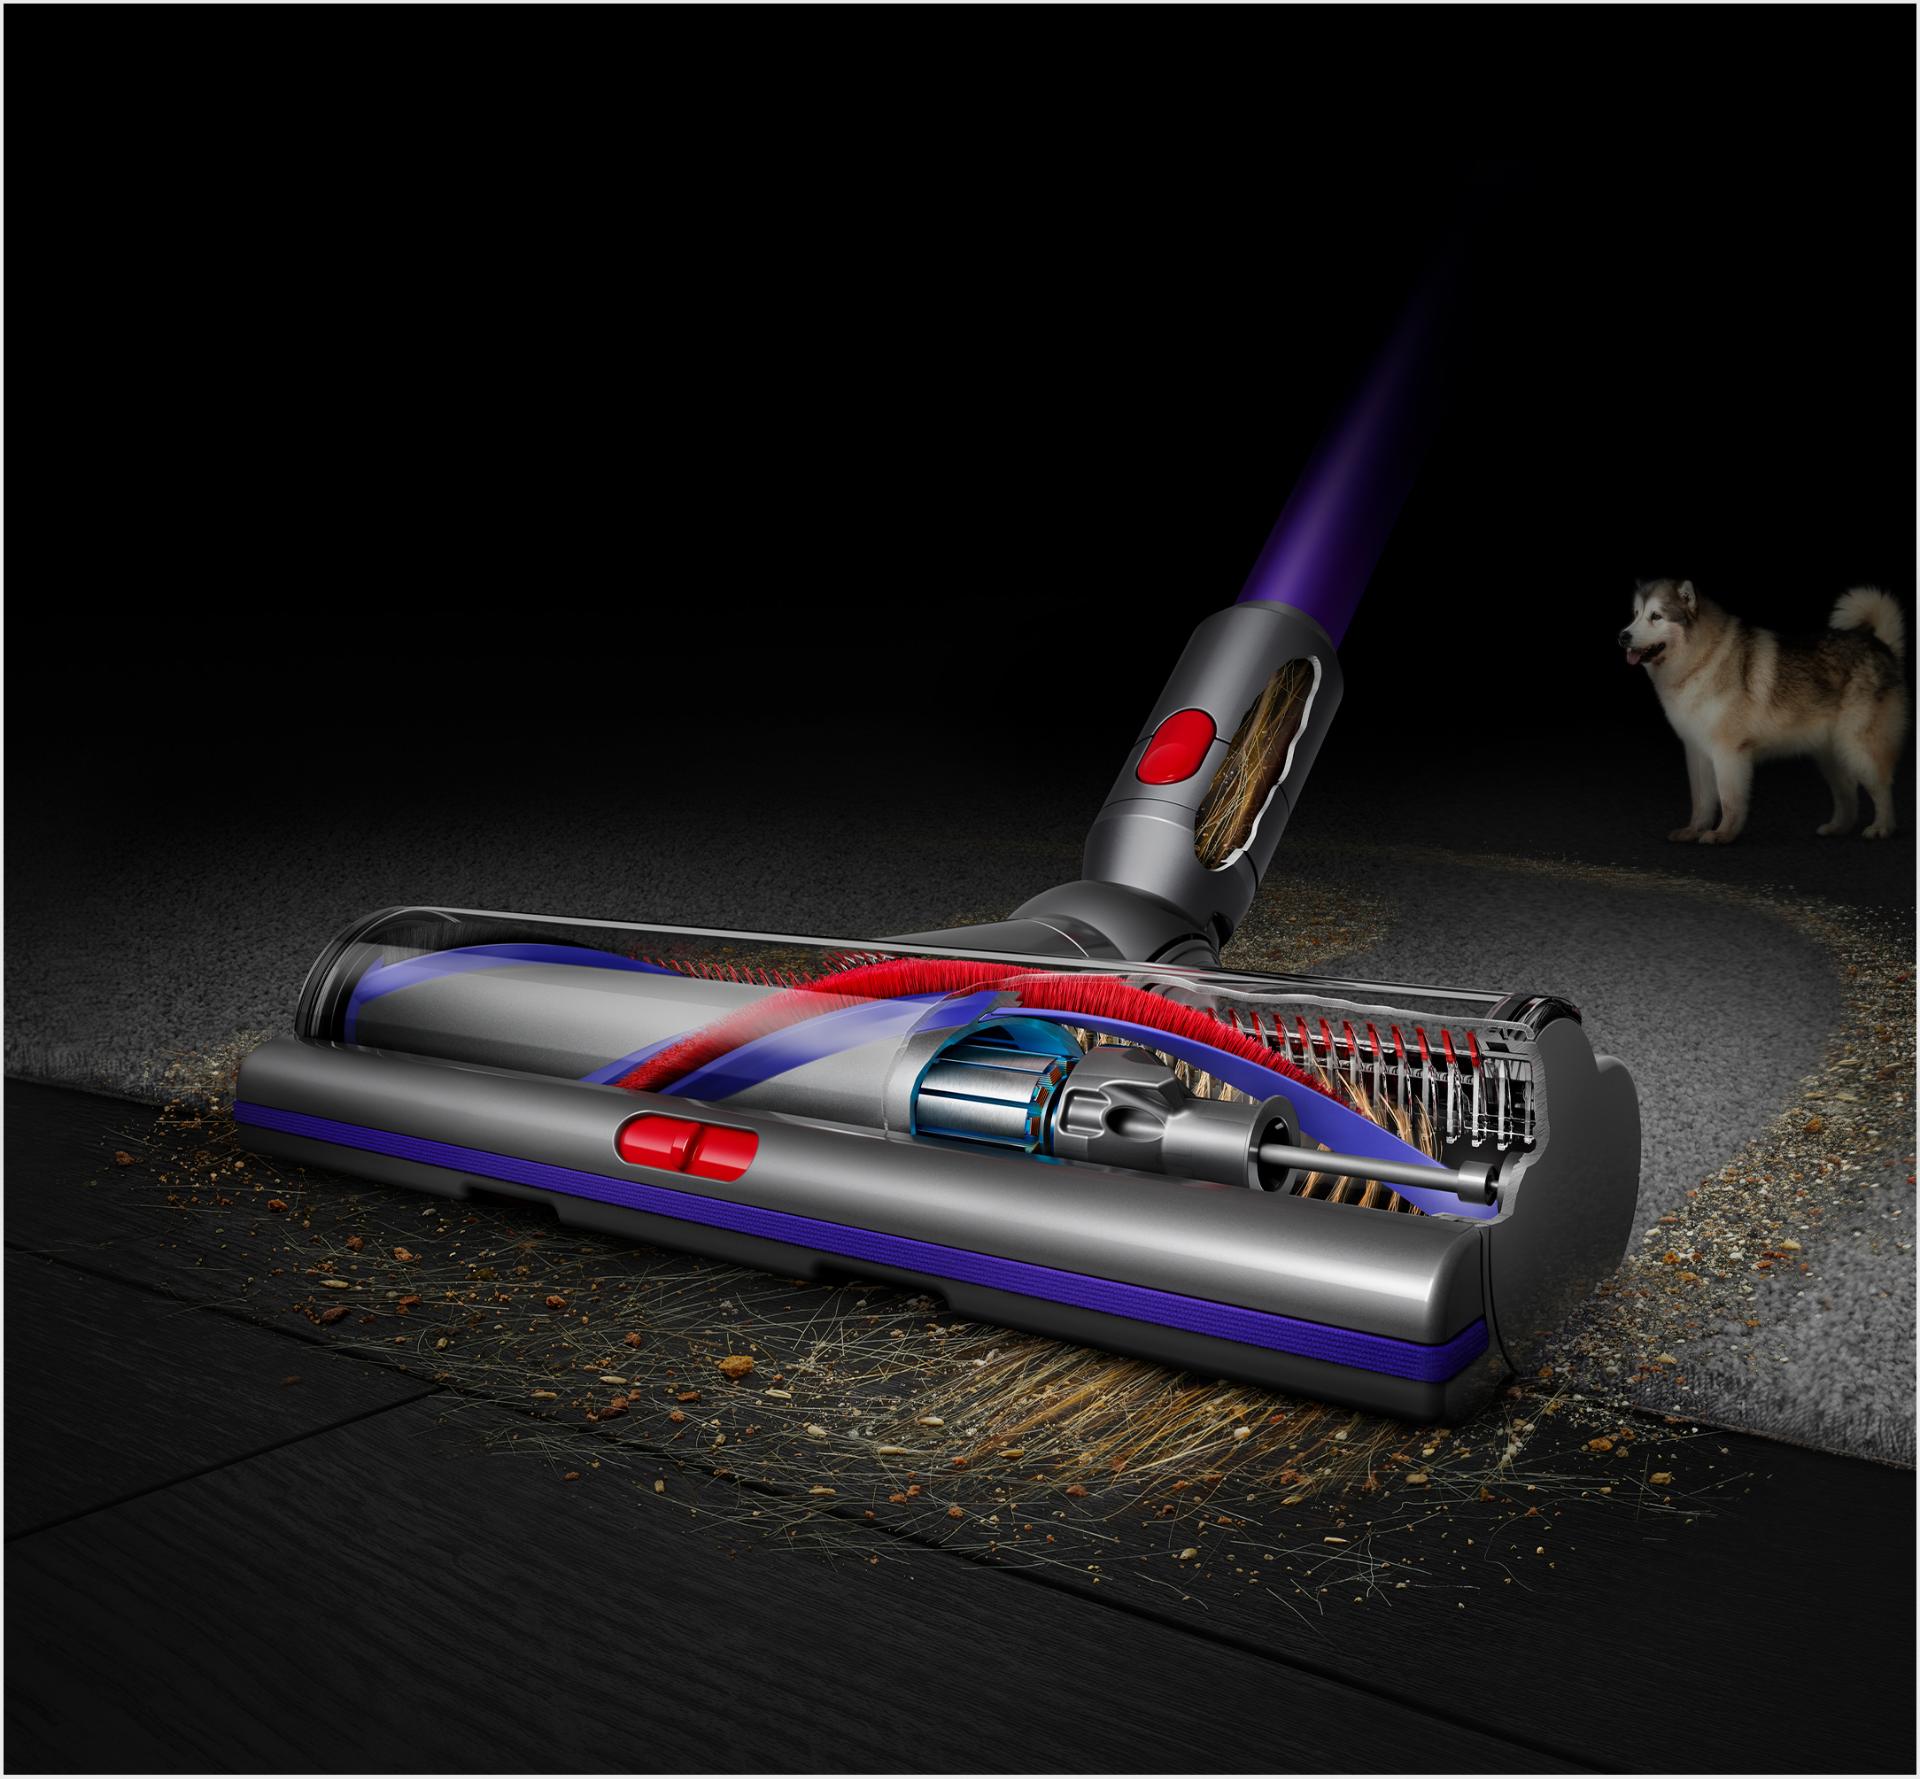 Elektroszczotka Digital Motorbar przechodząca z twardej podłogi na dywan.